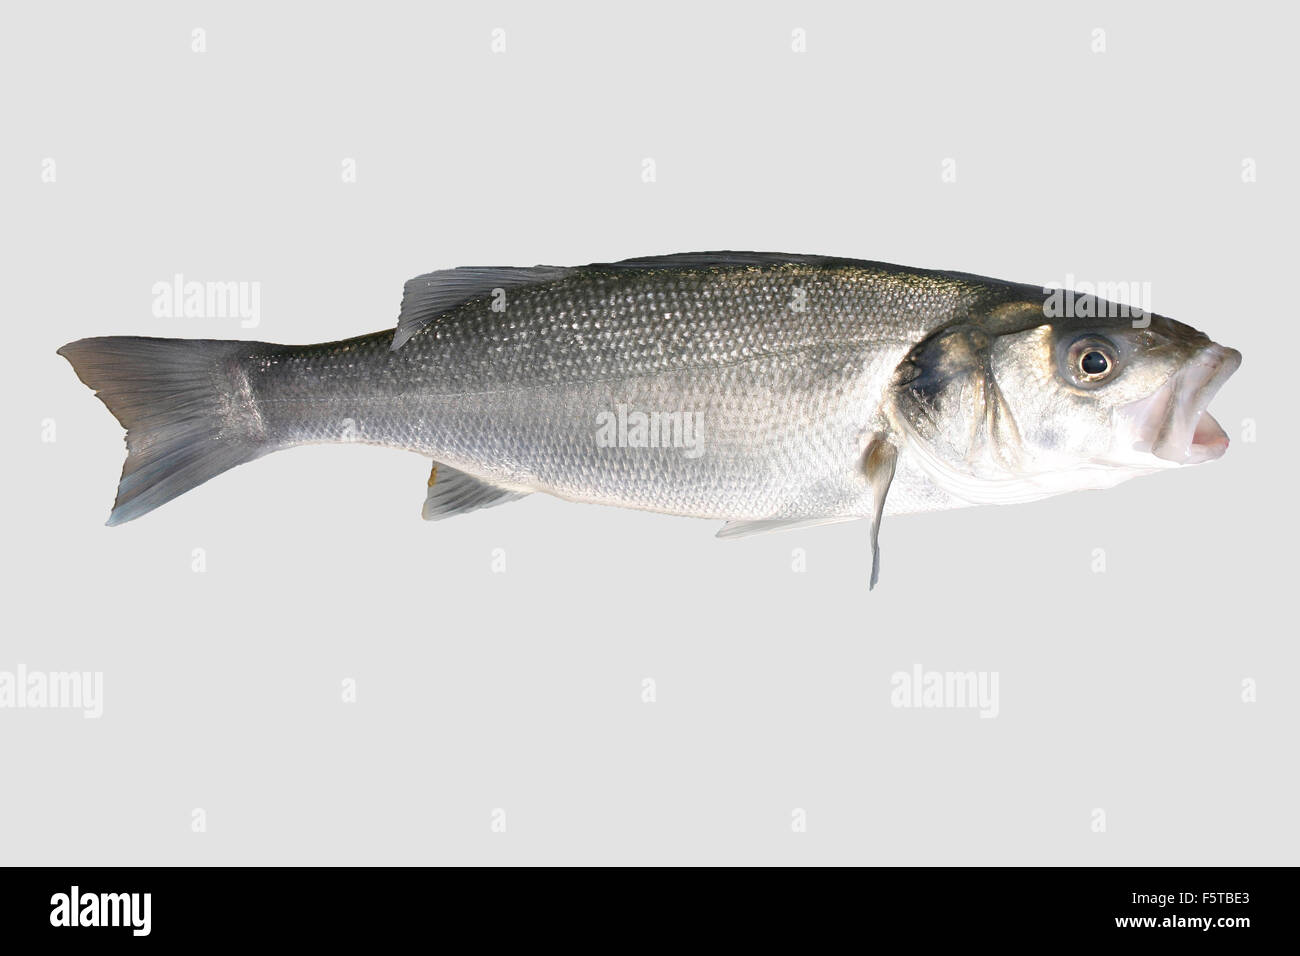 Isolated sea bass or sea fish. Stock Photo